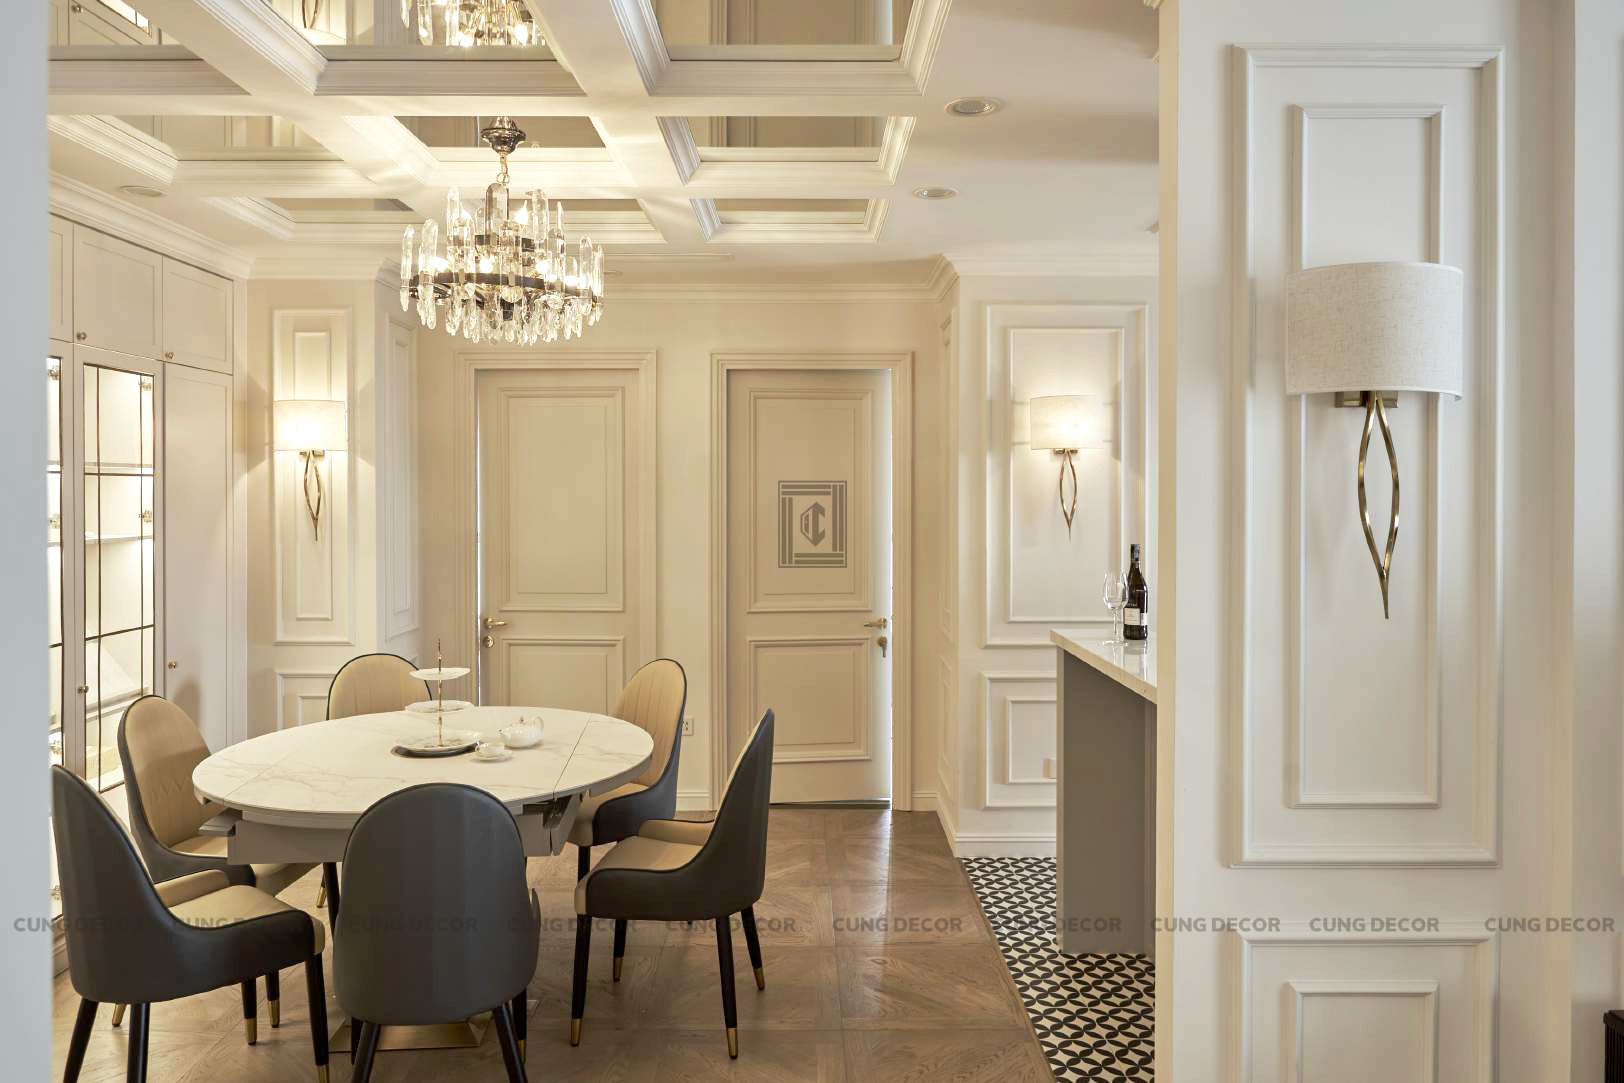 Hoàn thiện nội thất phòng ăn Căn hộ Landmark 81 Vinhomes Central Park phong cách Tân cổ điển Neo Classic